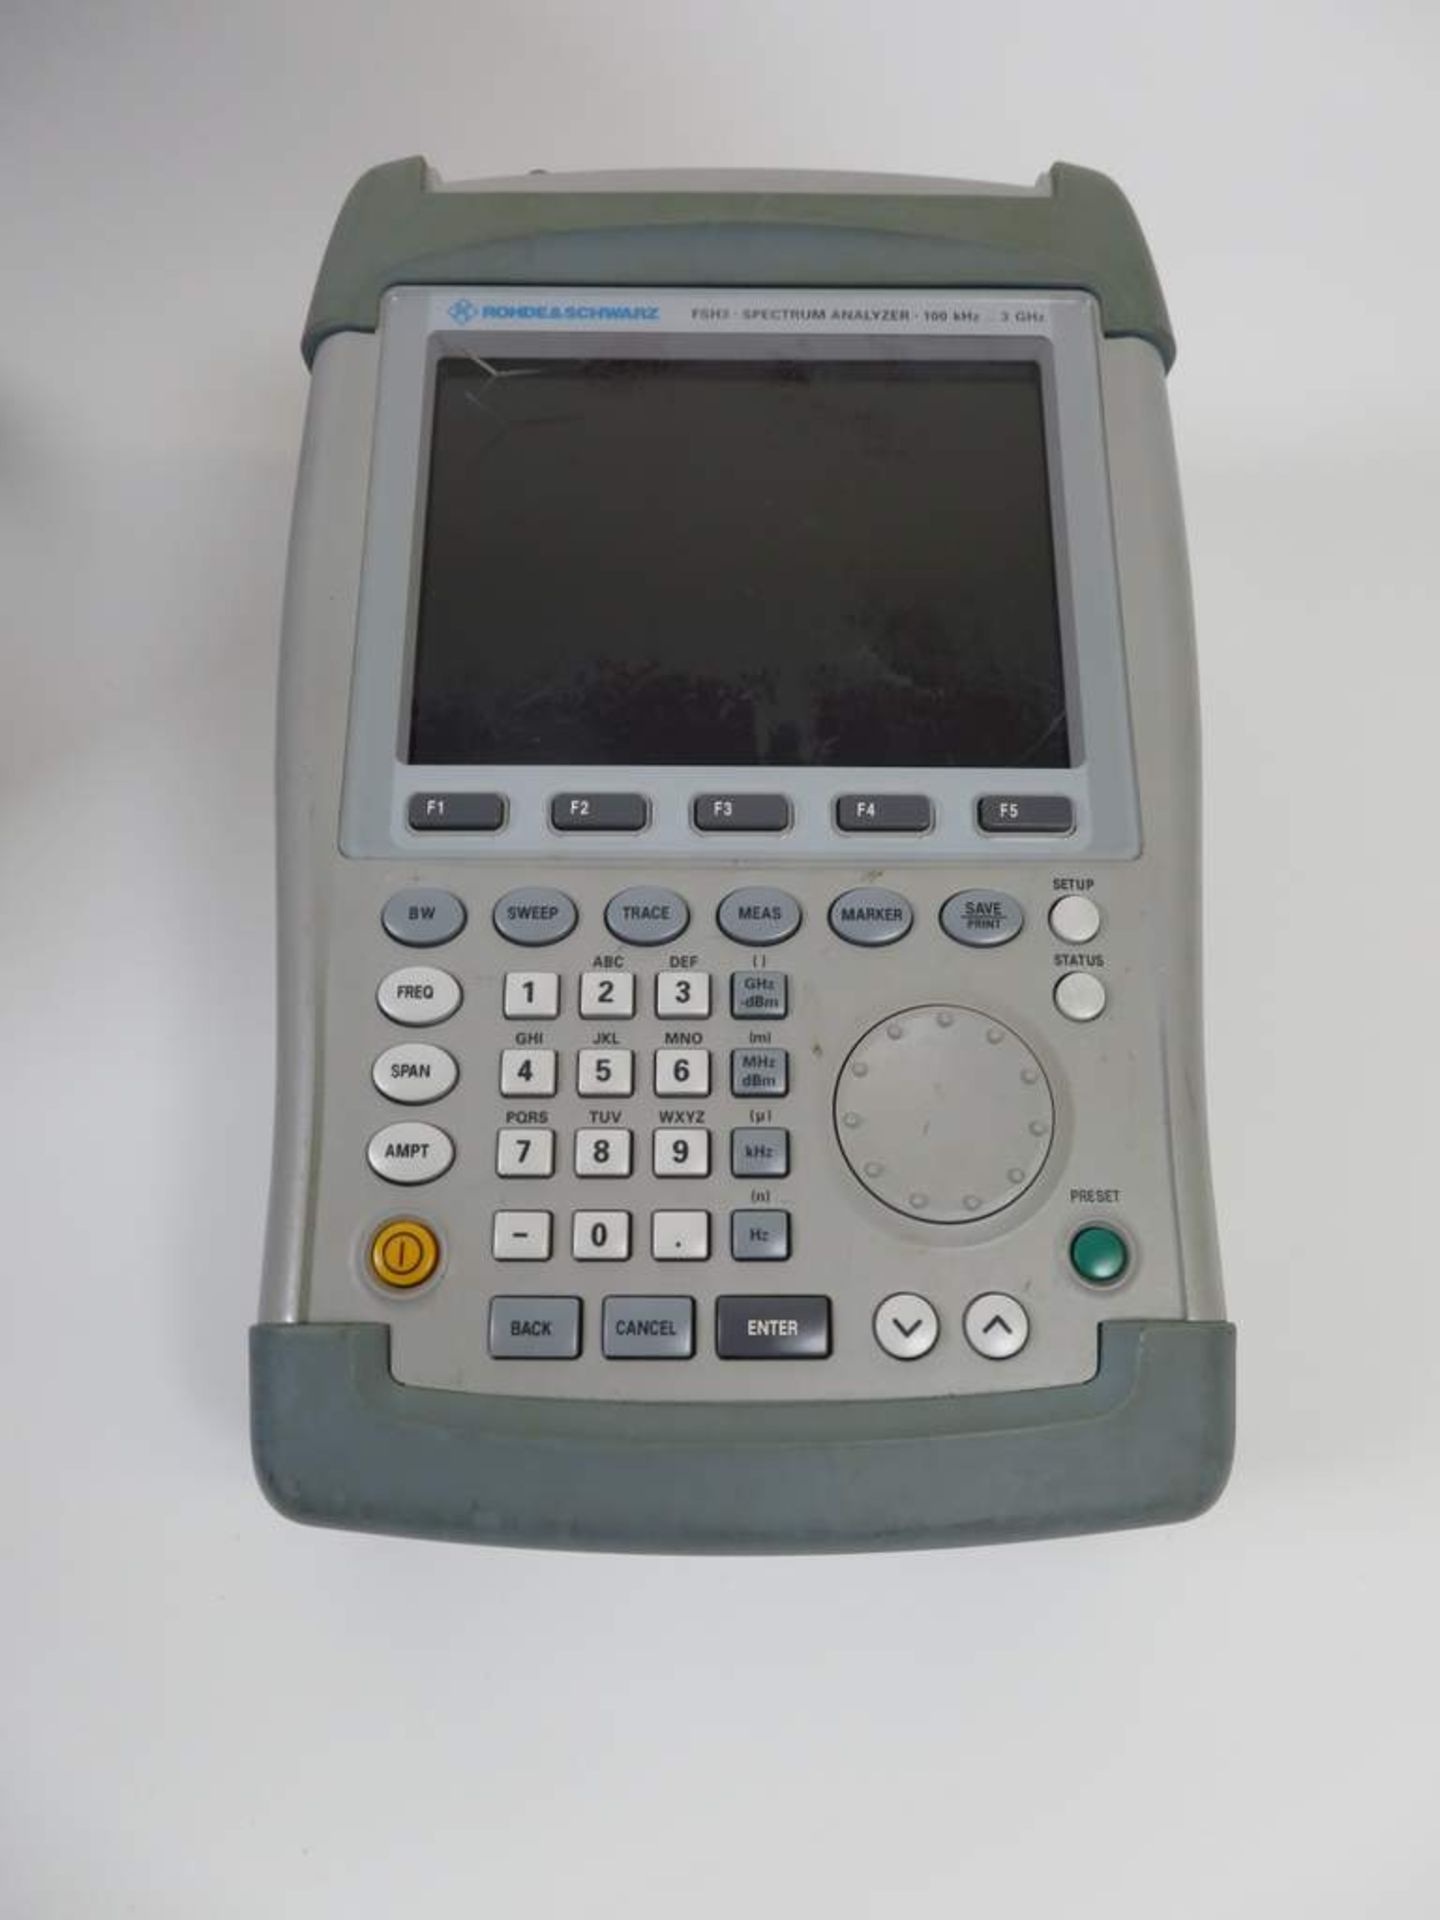 Rohde & Schwarz FSH3 Handheld Spectrum Analyser - Image 2 of 4